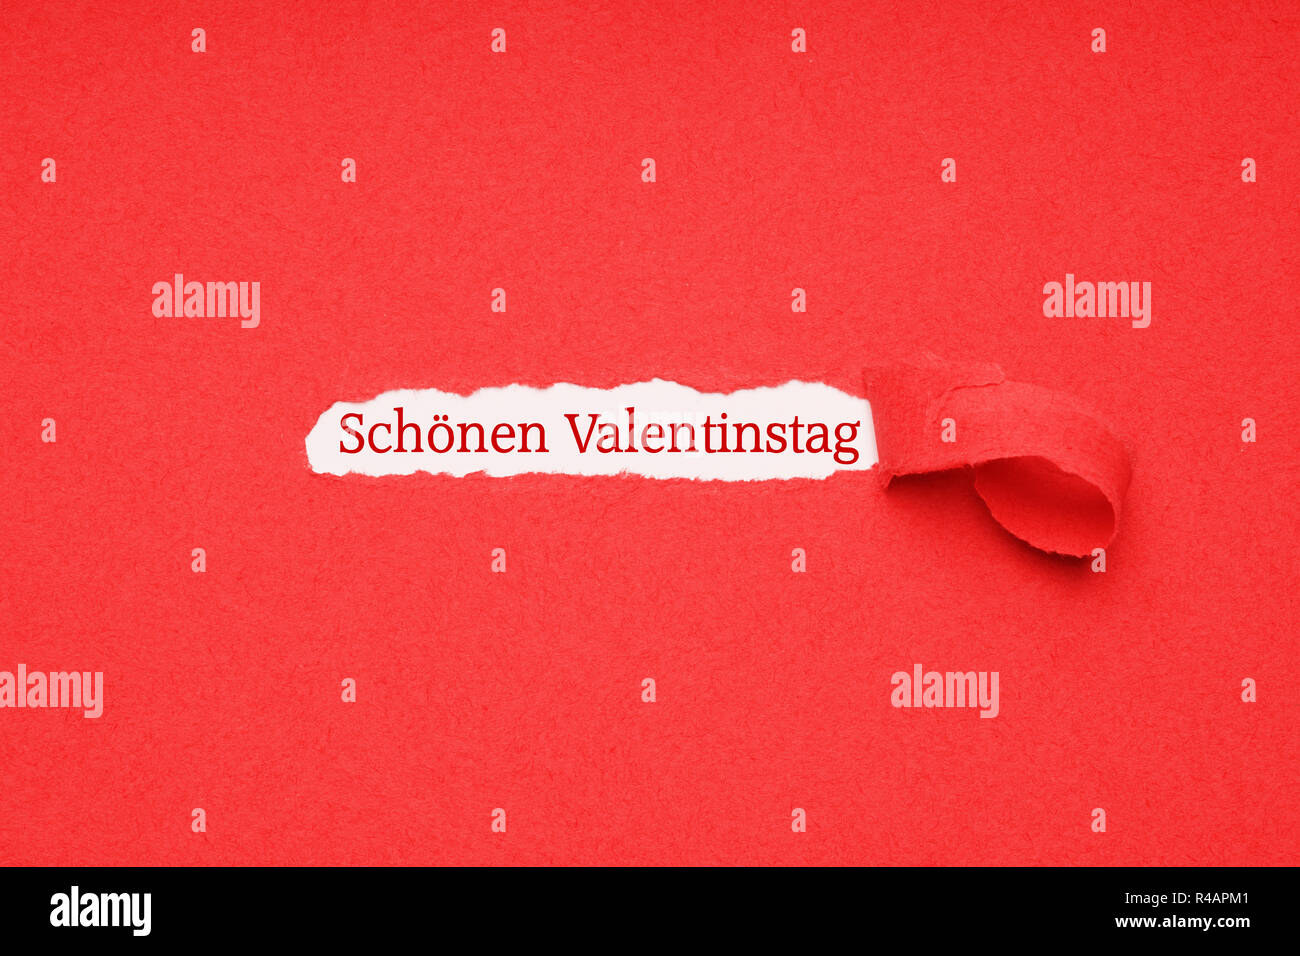 schonen valentinstag means happy valentines day in german Stock Photo